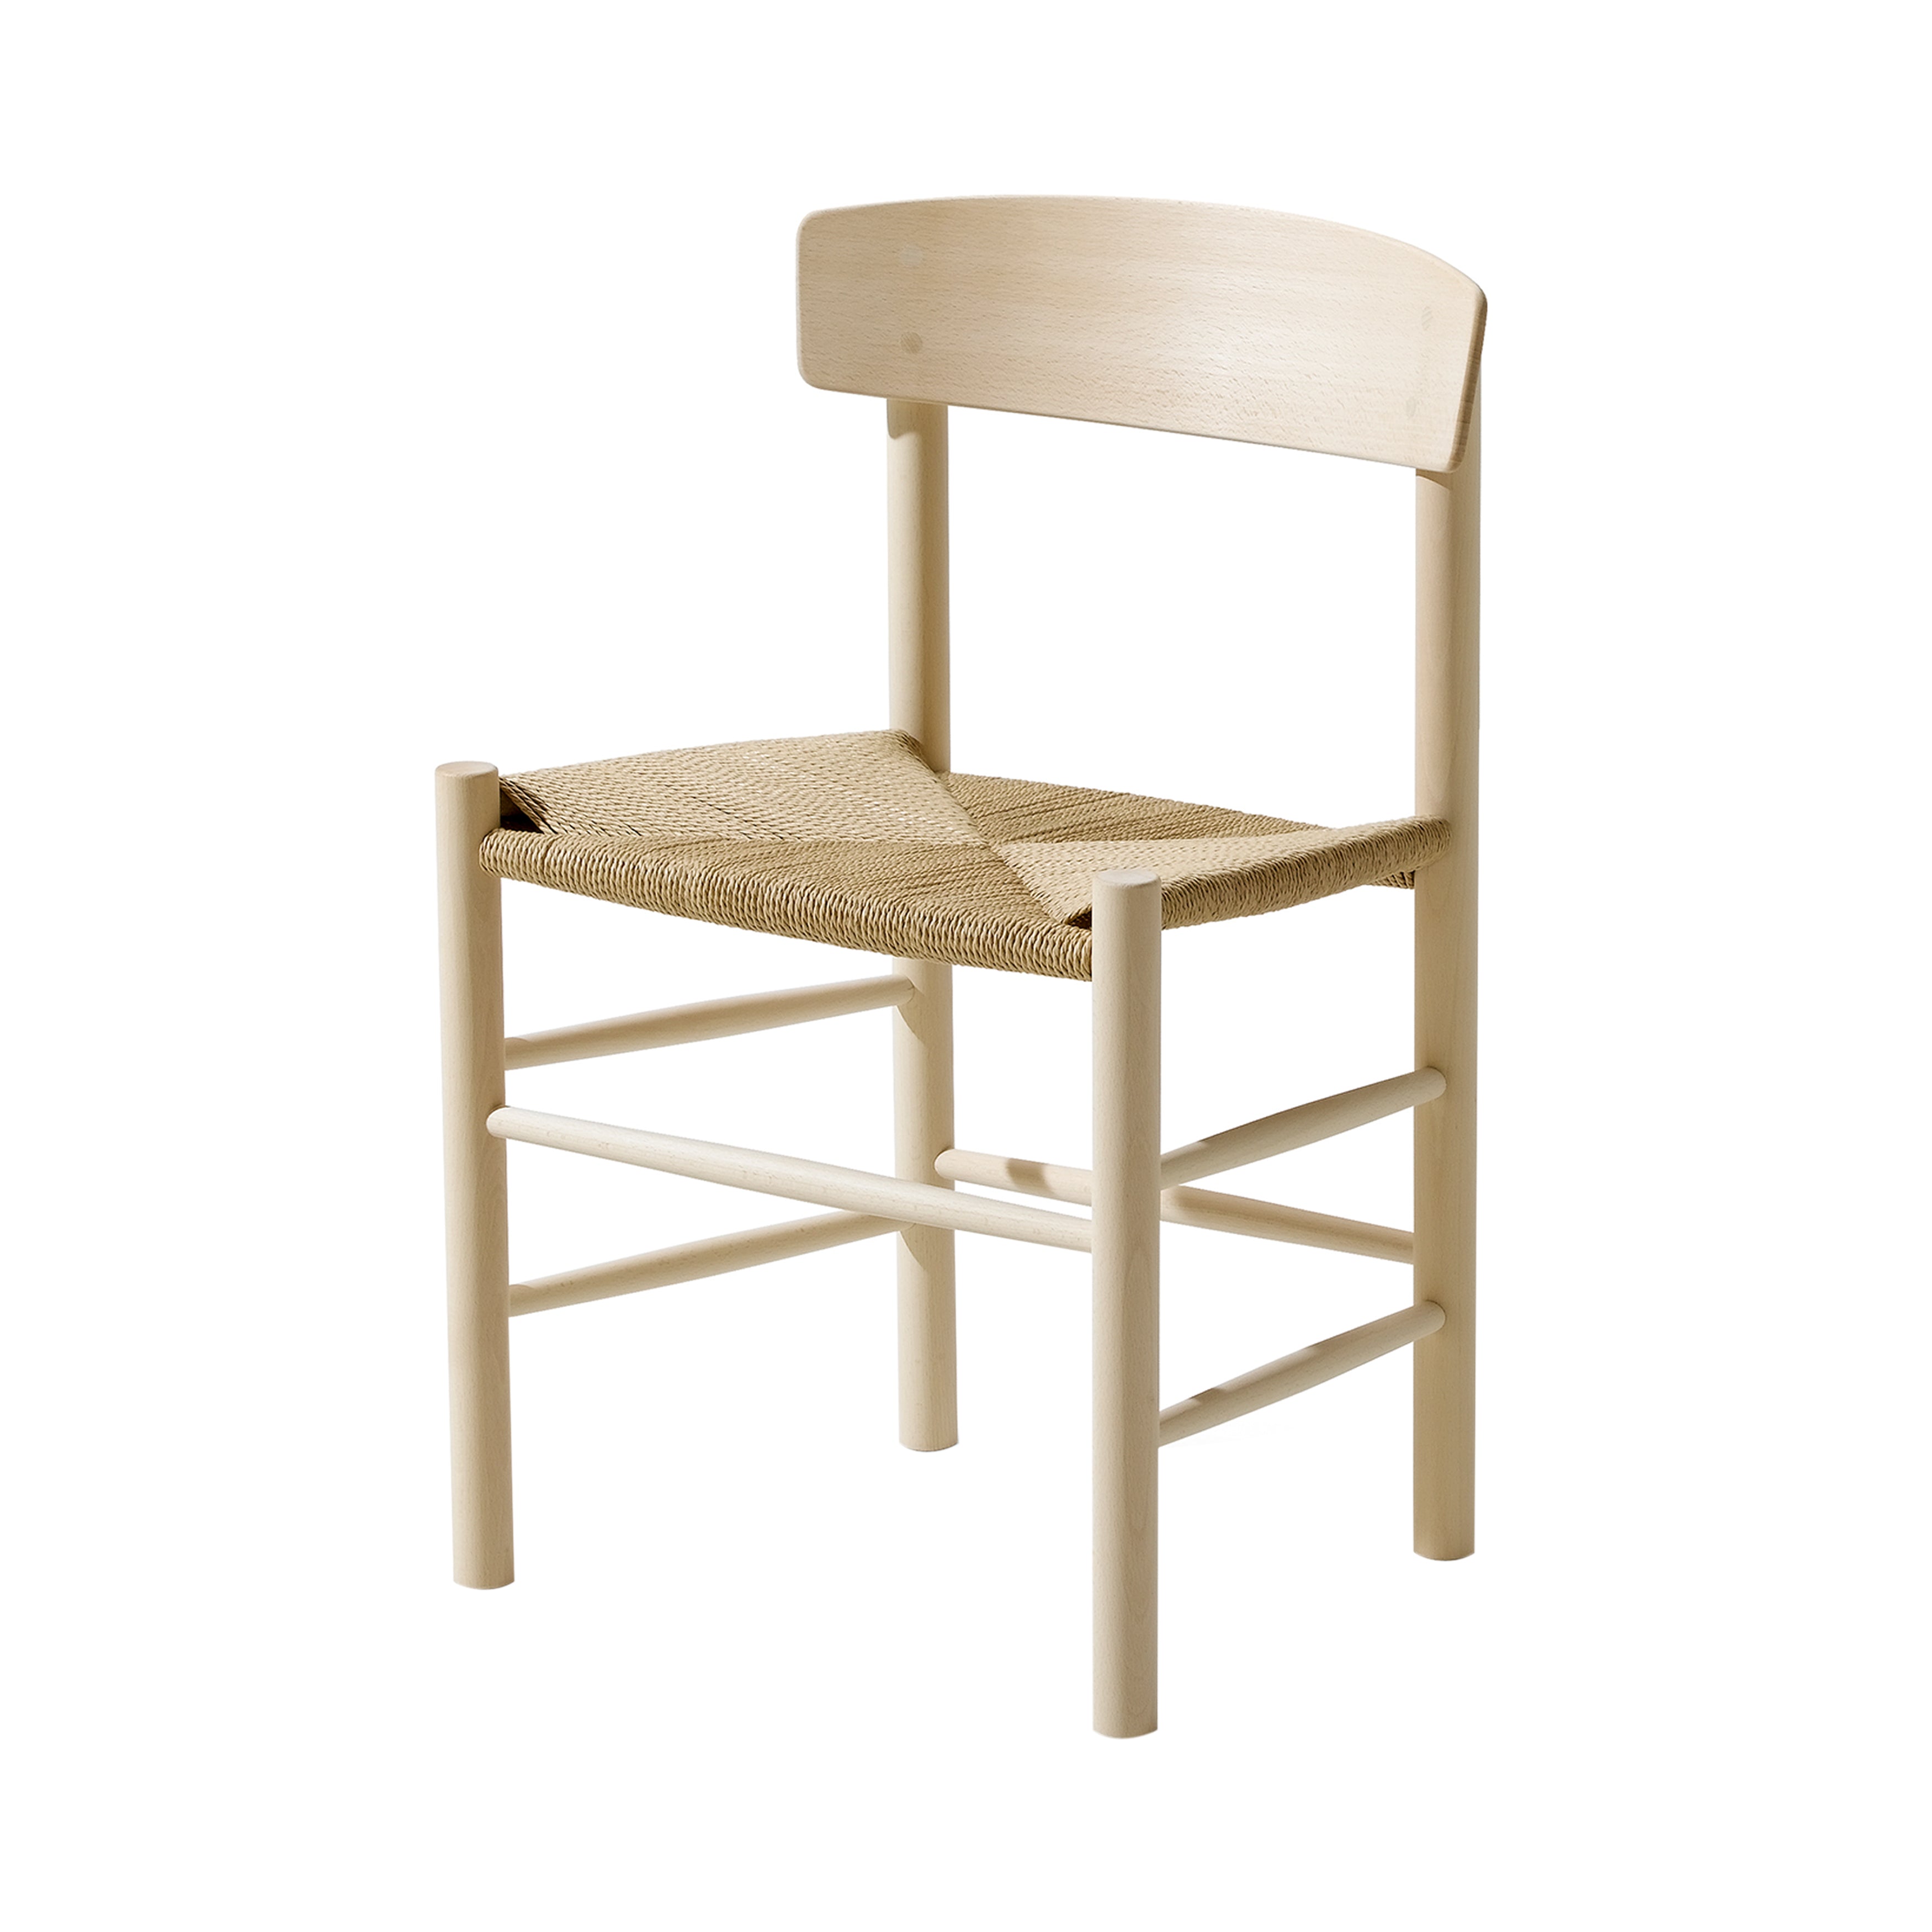 J39 Mogensen Chair: Soaped Beech + Natural